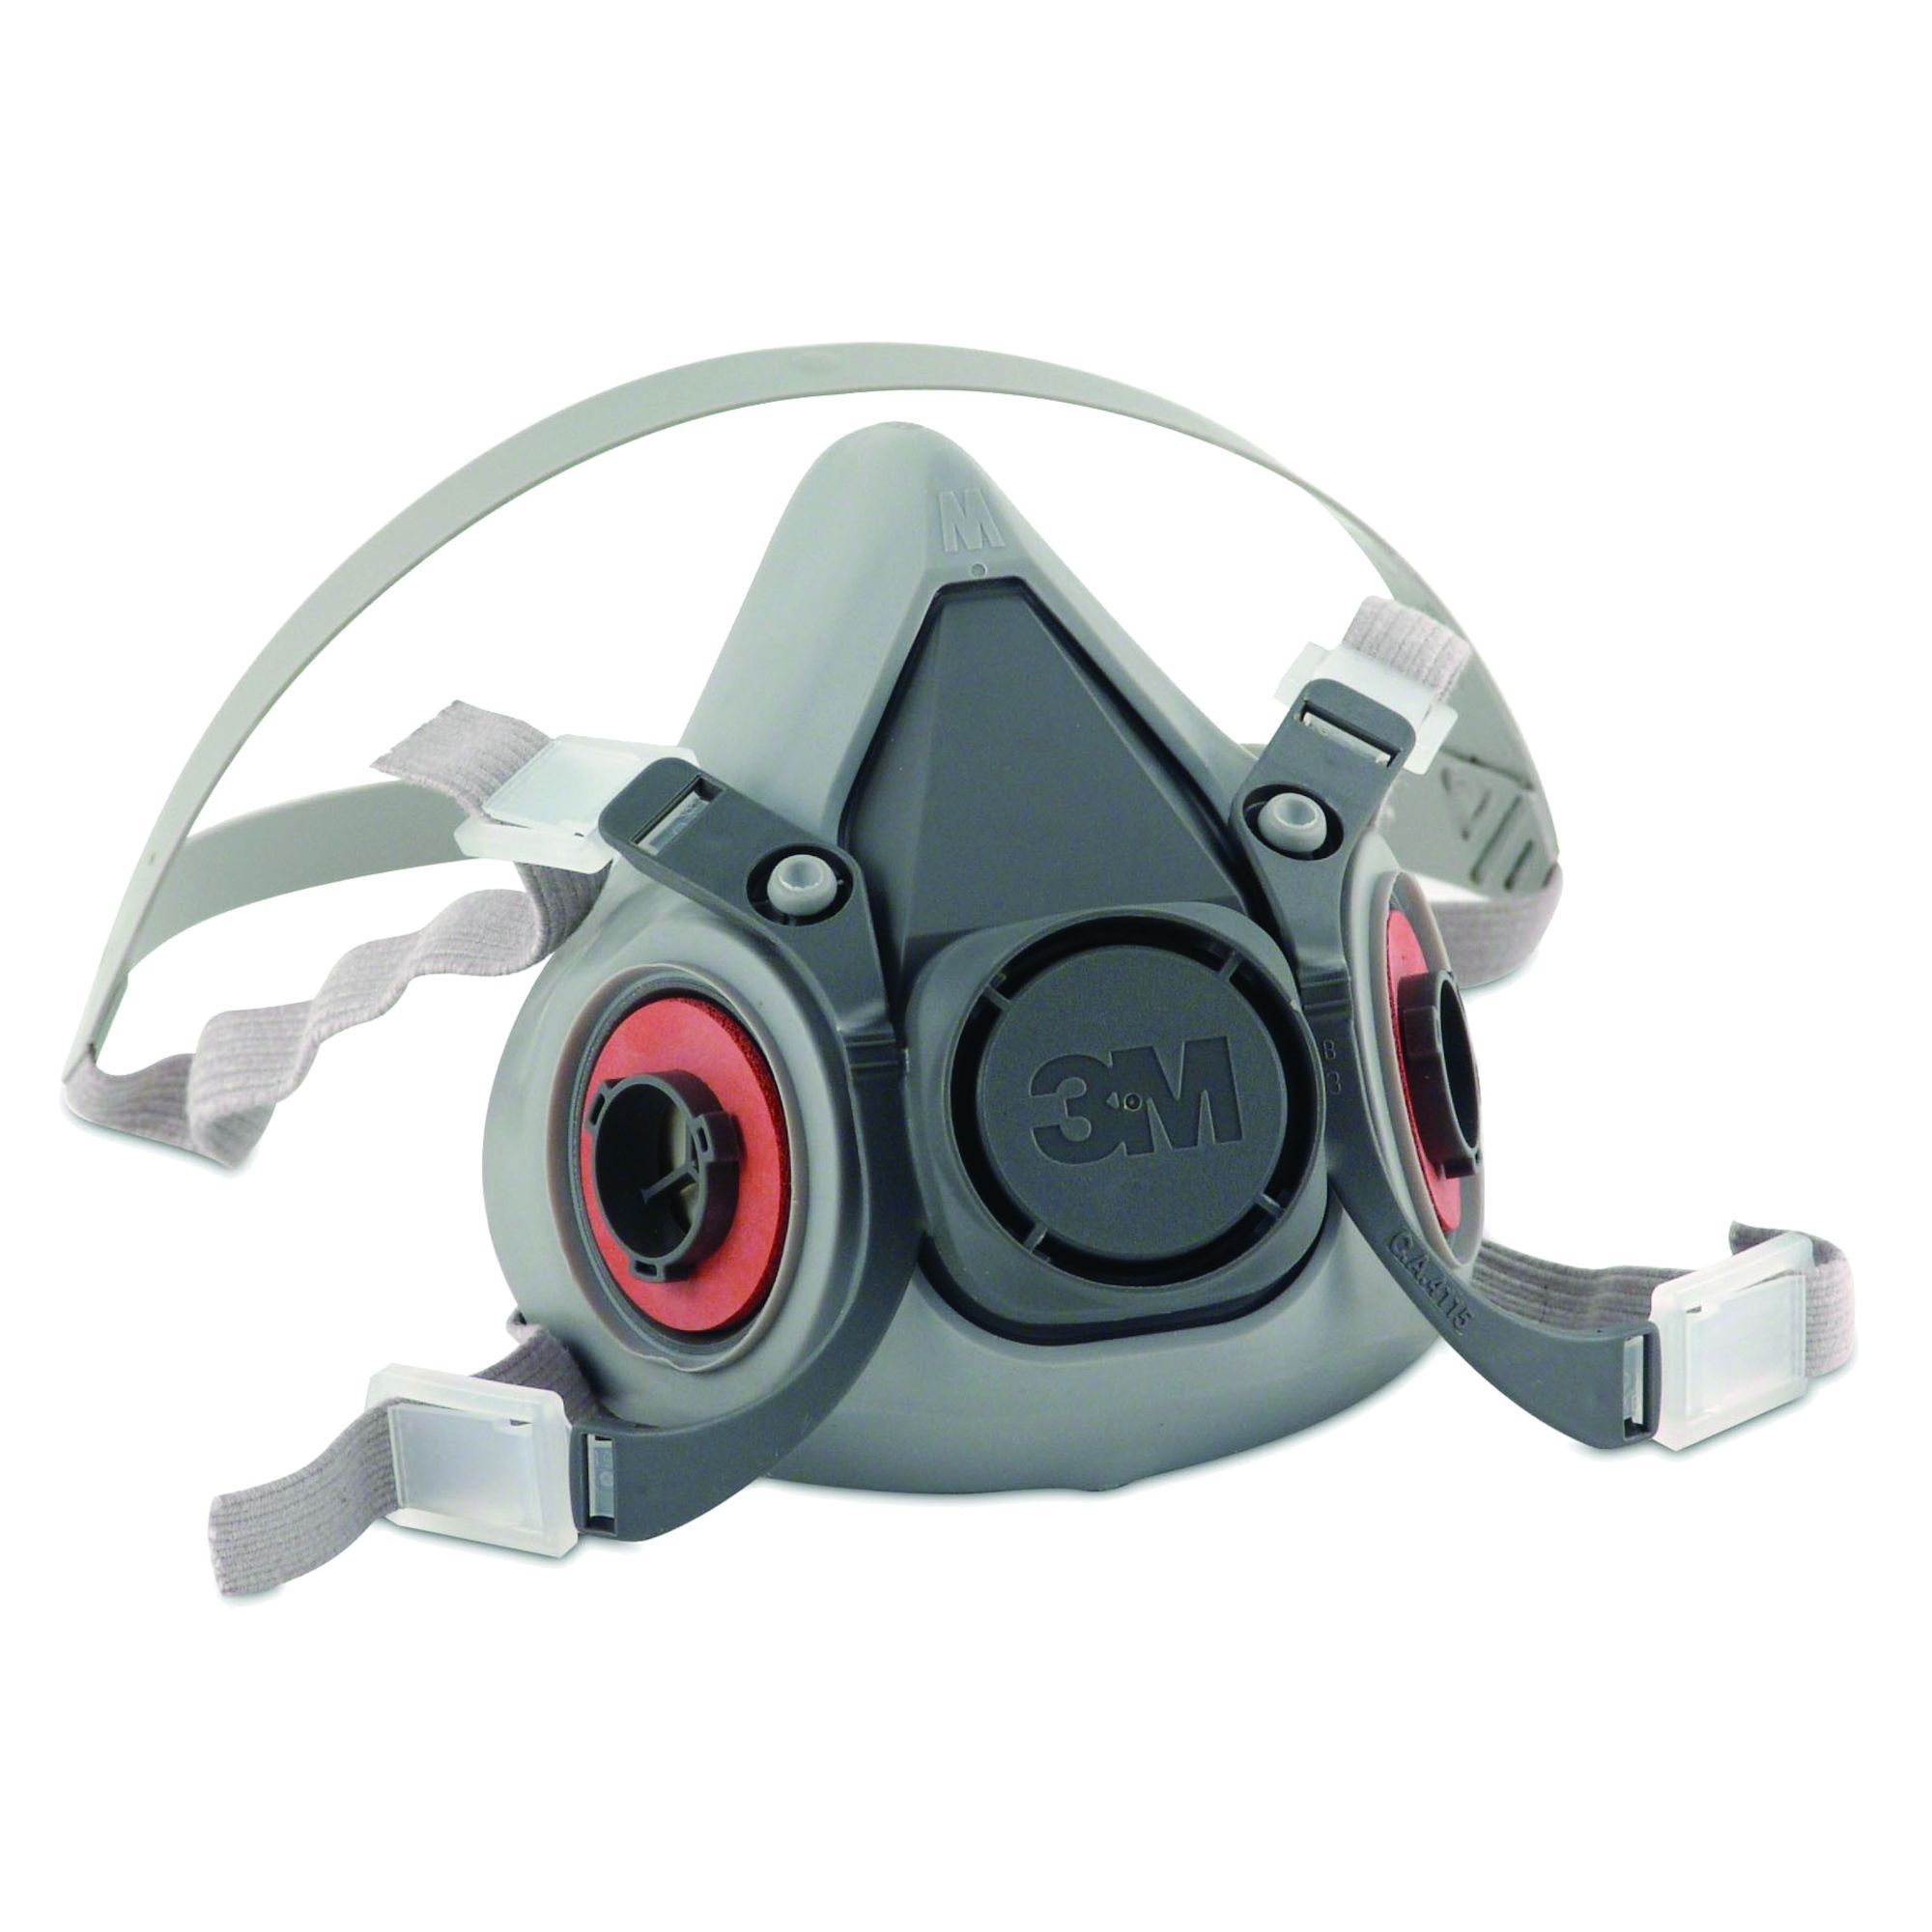 Masque respirateur contre les odeurs R95 Tekk Protection